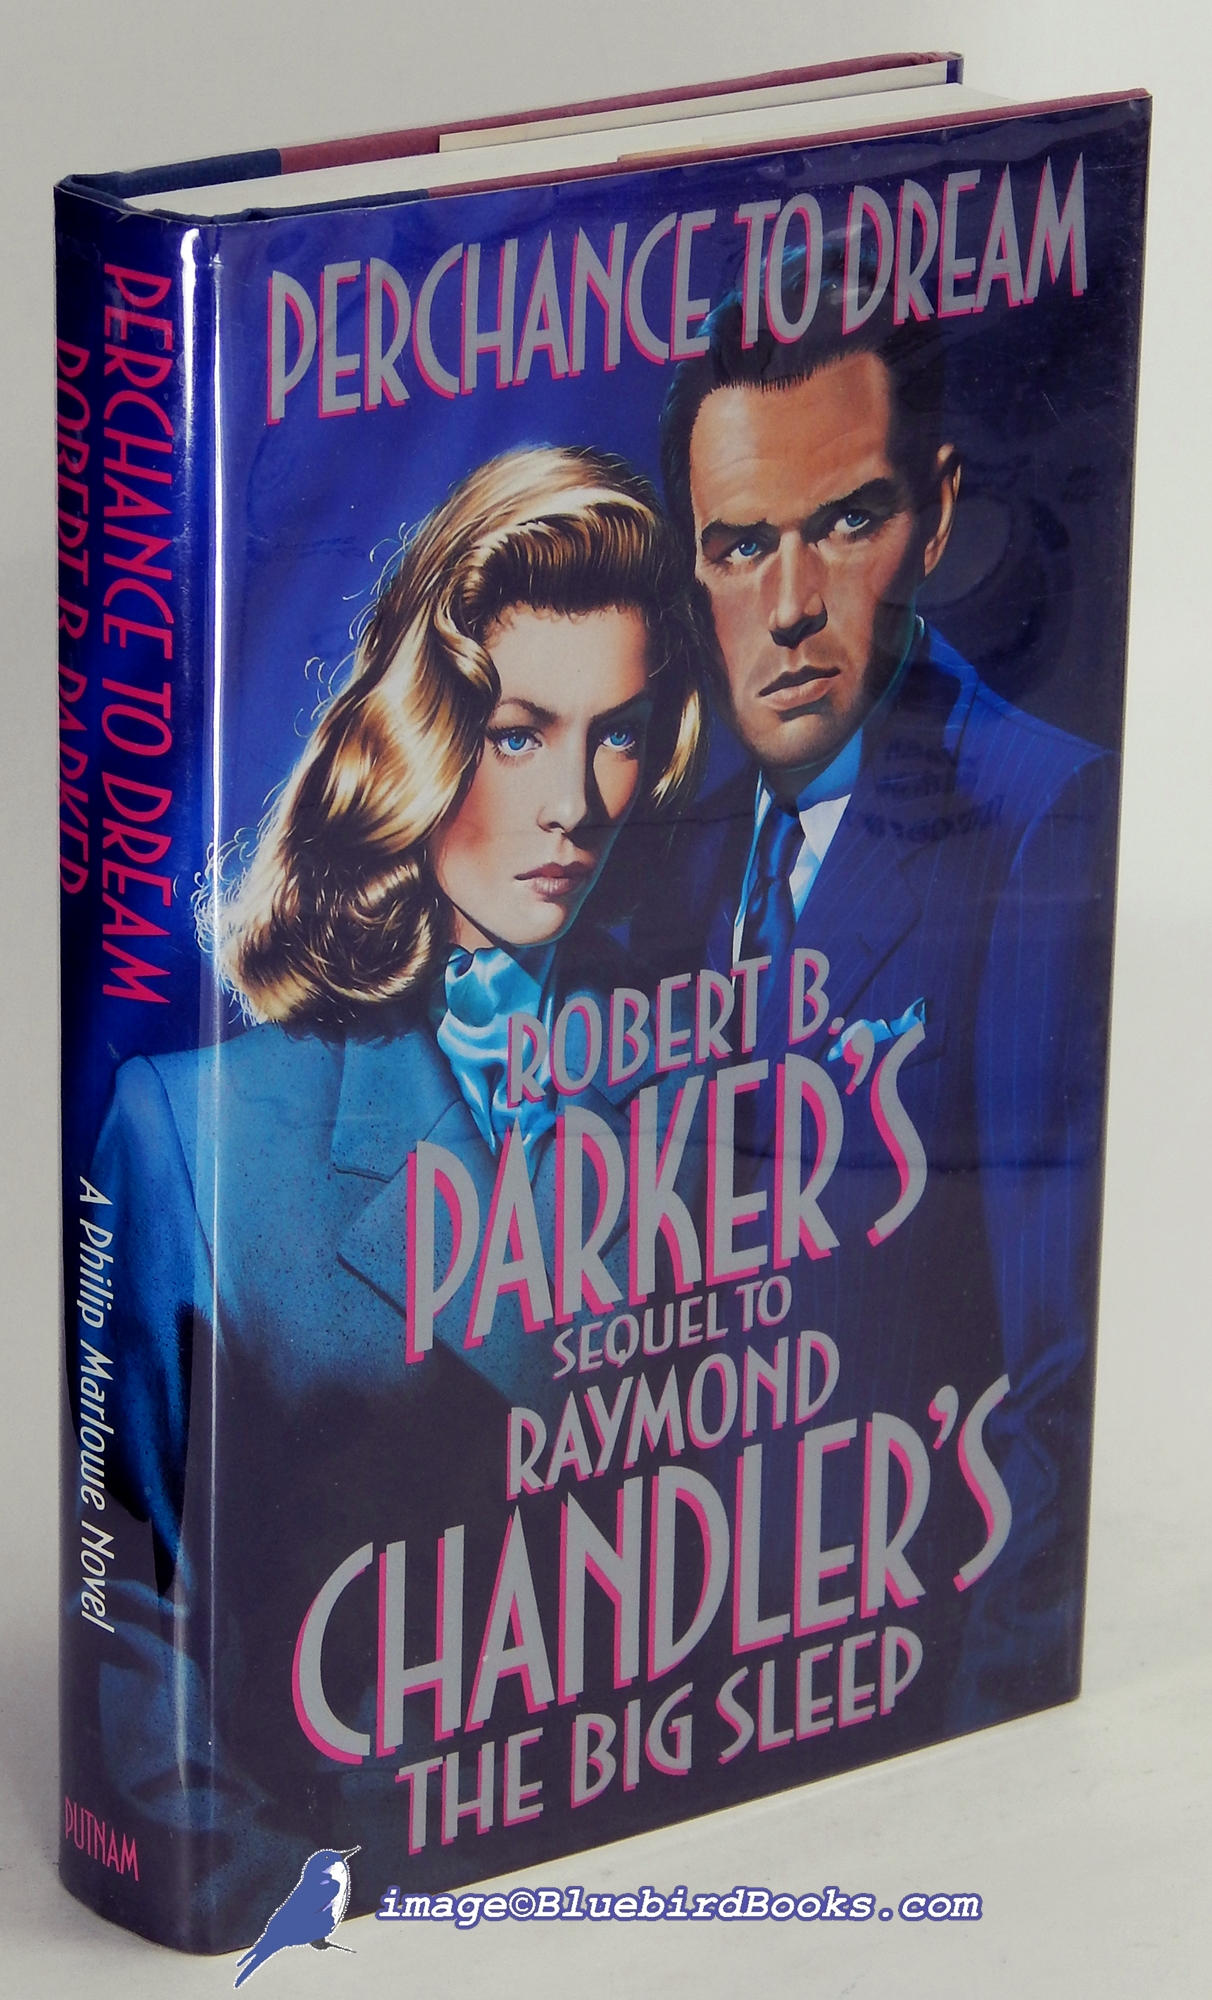 PARKER, ROBERT B. - Perchance to Dream: Robert B. Parker's Sequel to Raymond Chandler's the Big Sleep (a Philip Marlowe Novel)